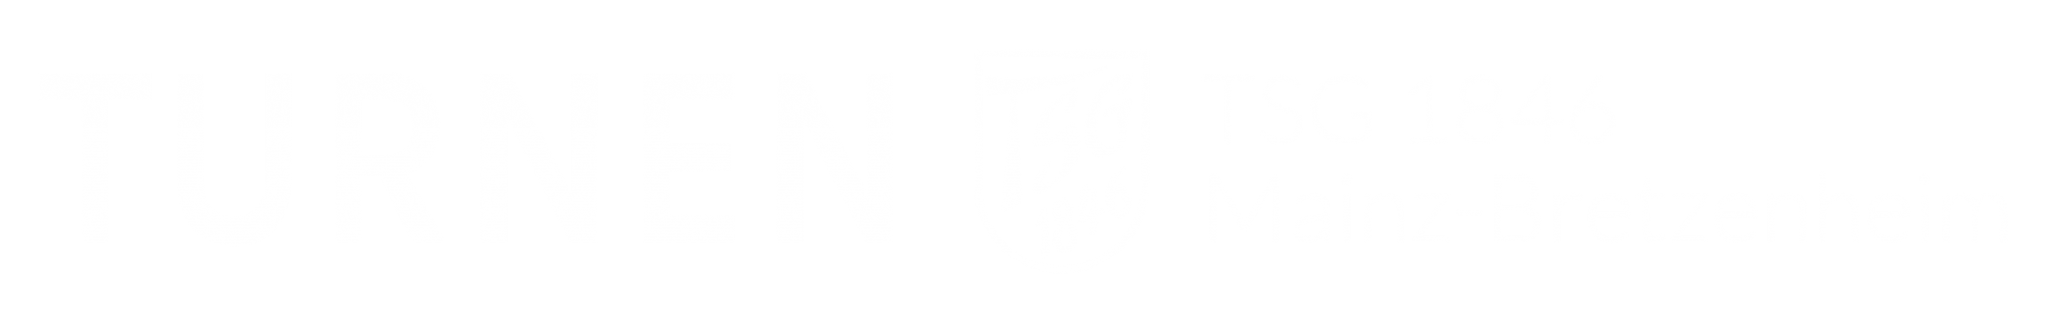 Turnen TSG 1846 Mainz-Bretzenheim